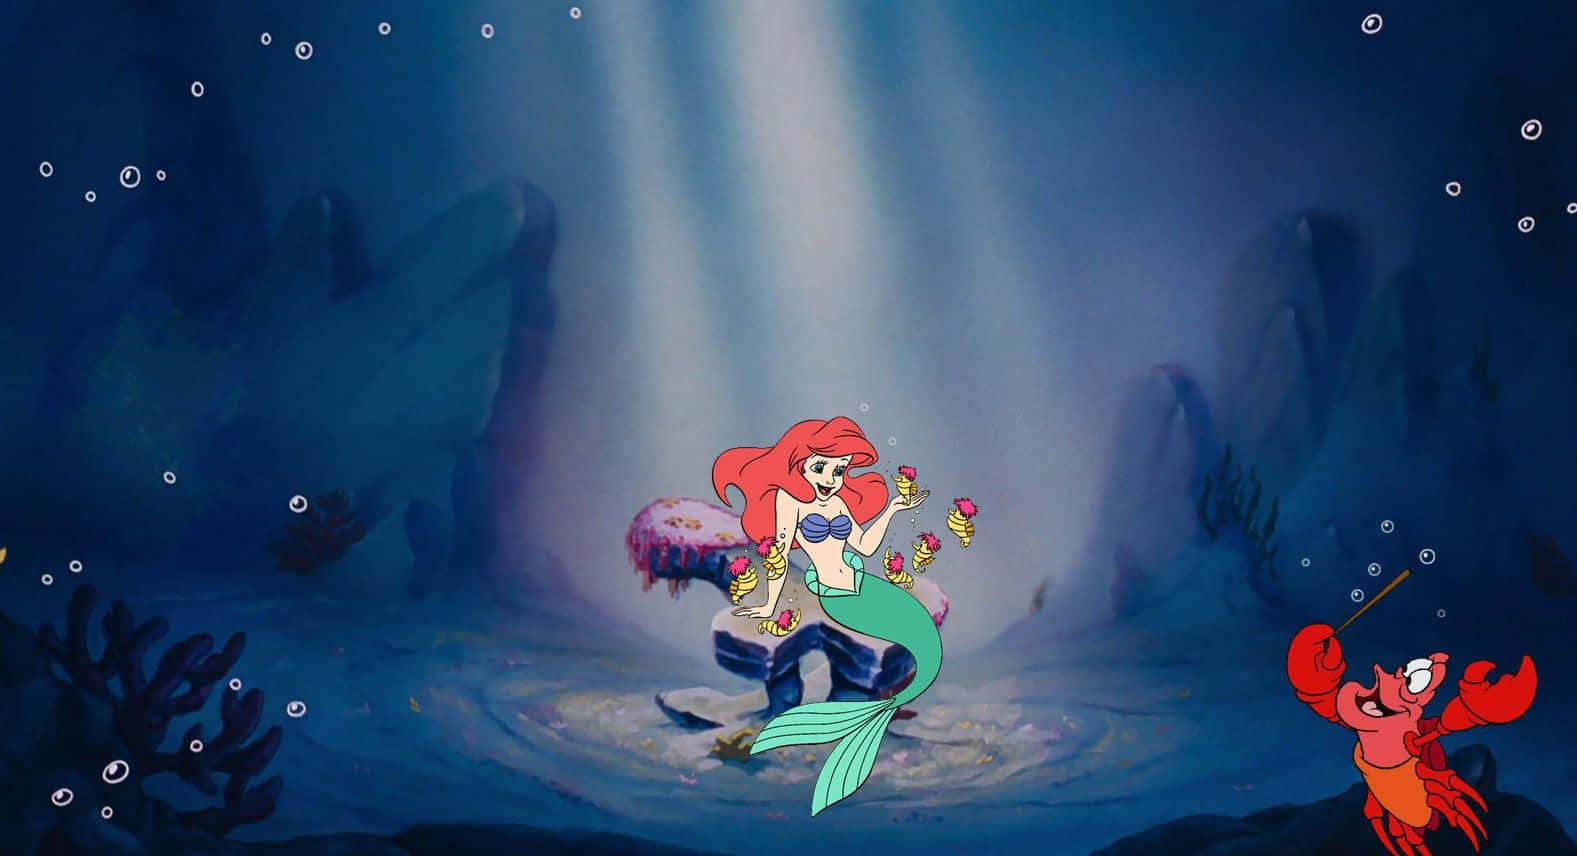 Ariel in the Undersea World of The Little Mermaid